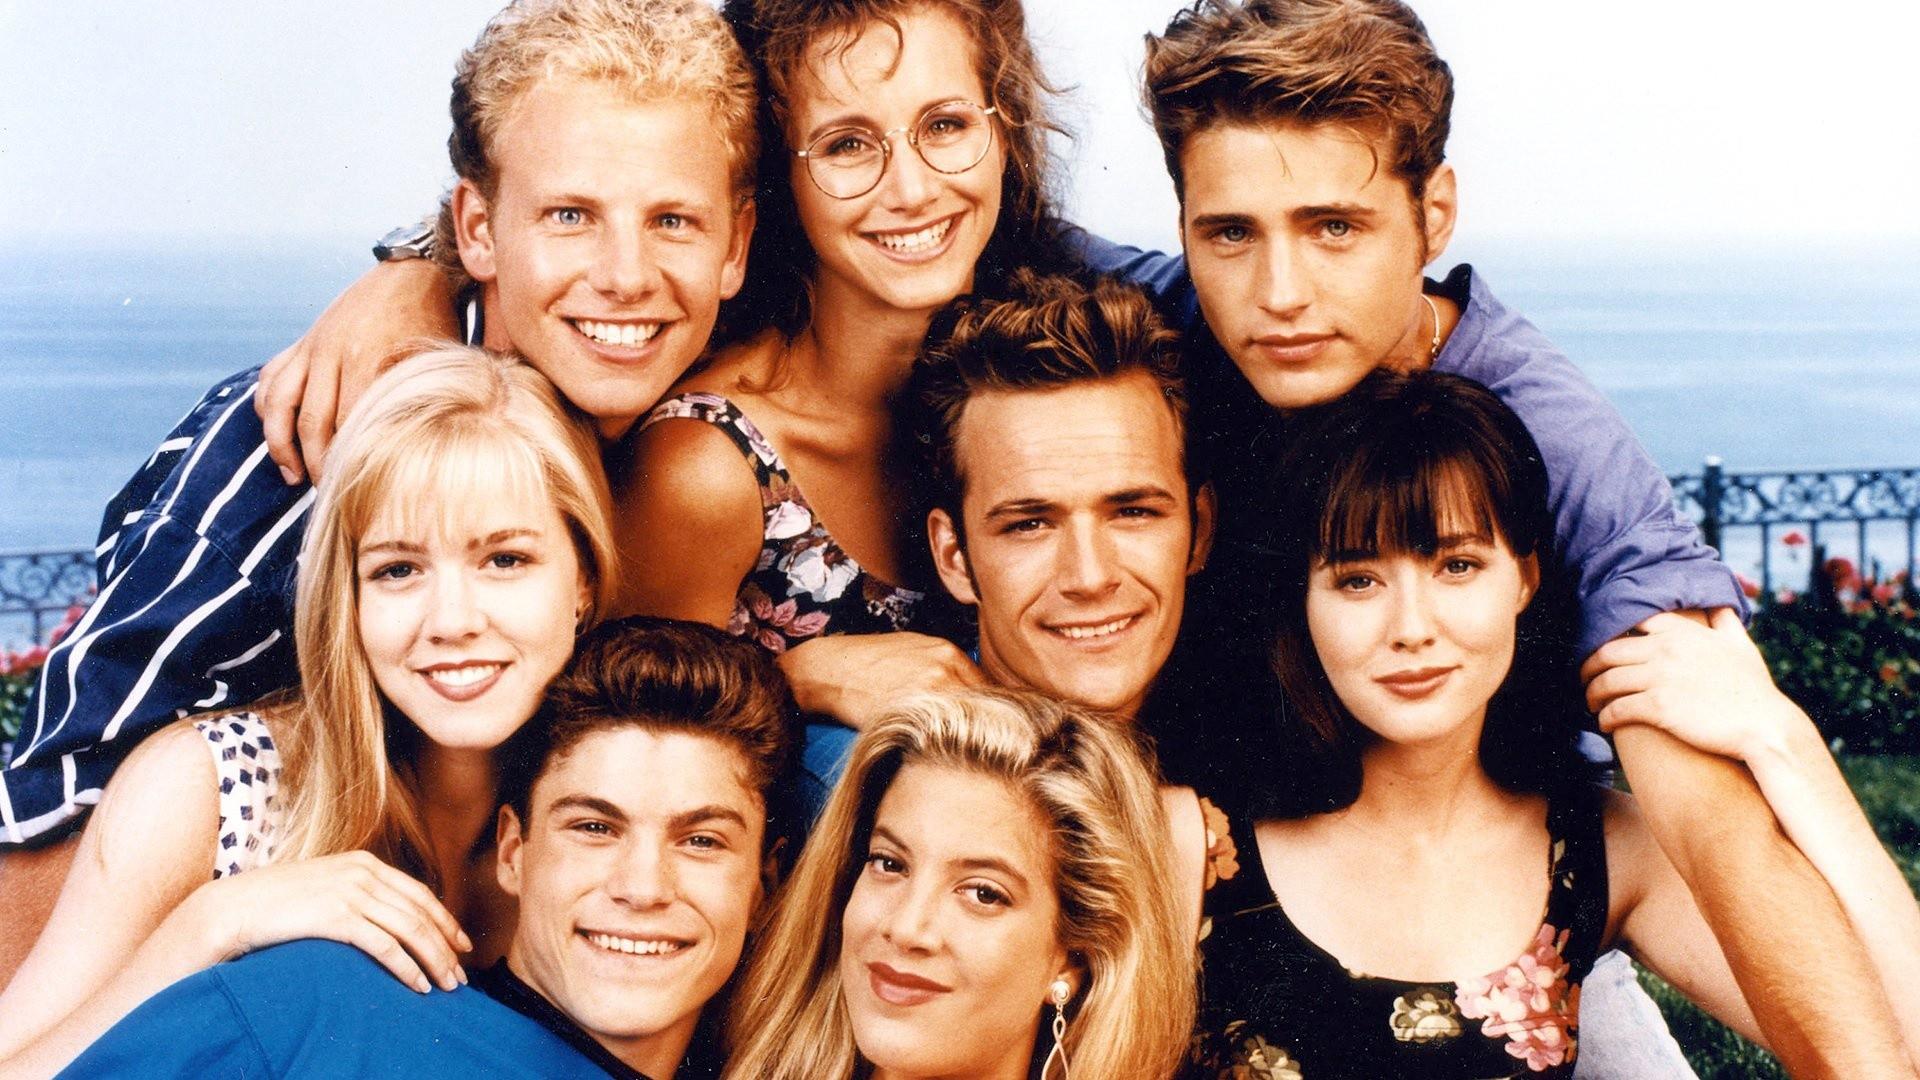 Беверли-Хиллз 90210 – 1 сезон 8 серия «Зуд 17 лет» / Beverly Hills, 90210